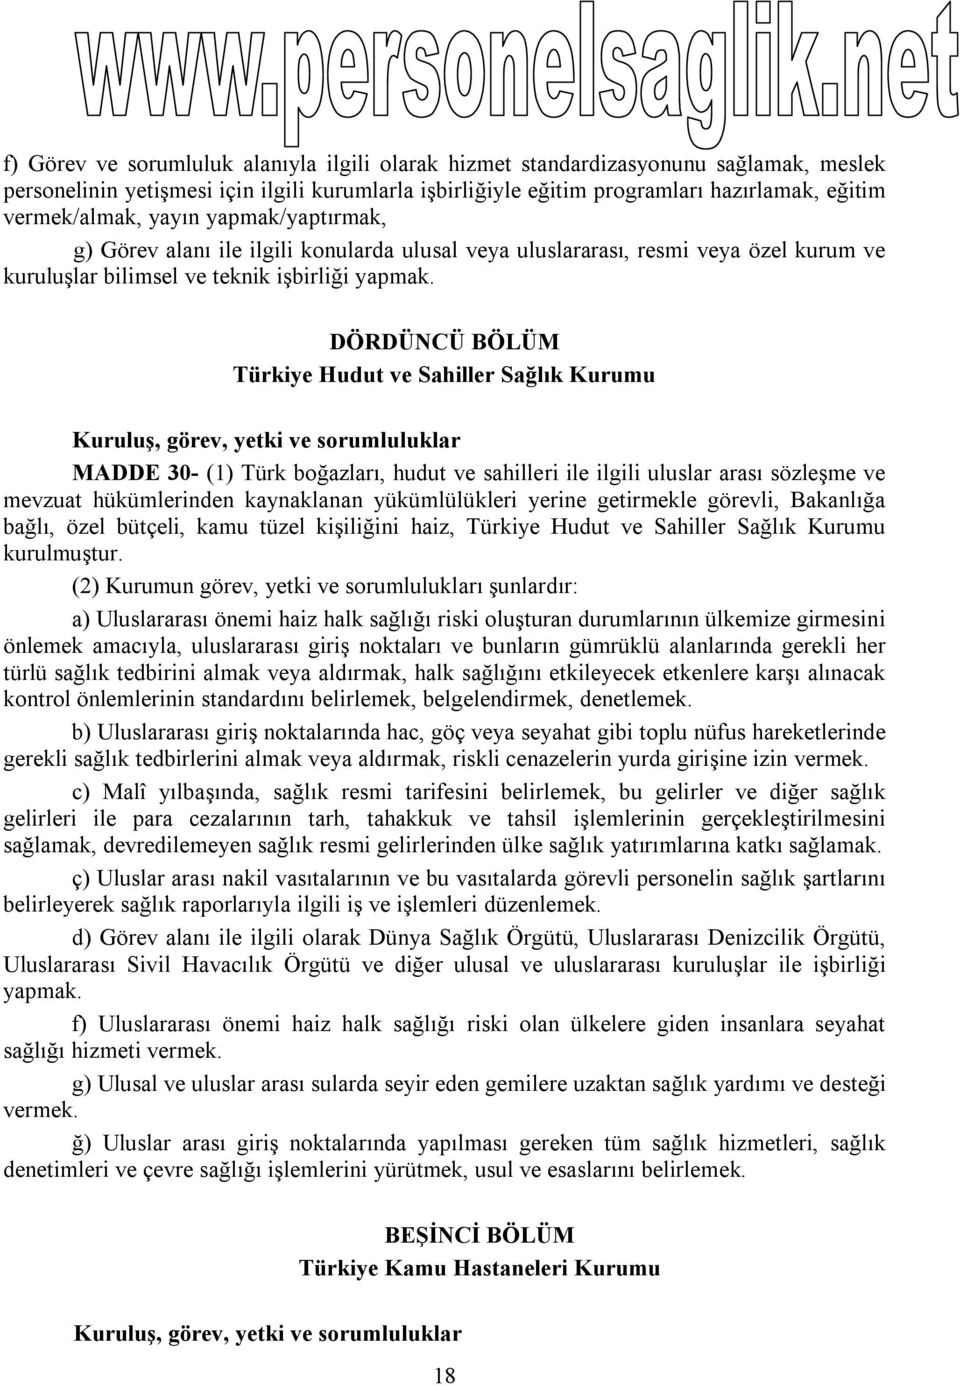 DÖRDÜNCÜ BÖLÜM Türkiye Hudut ve Sahiller Sağlık Kurumu Kuruluş, görev, yetki ve sorumluluklar MADDE 30- (1) Türk boğazları, hudut ve sahilleri ile ilgili uluslar arası sözleşme ve mevzuat